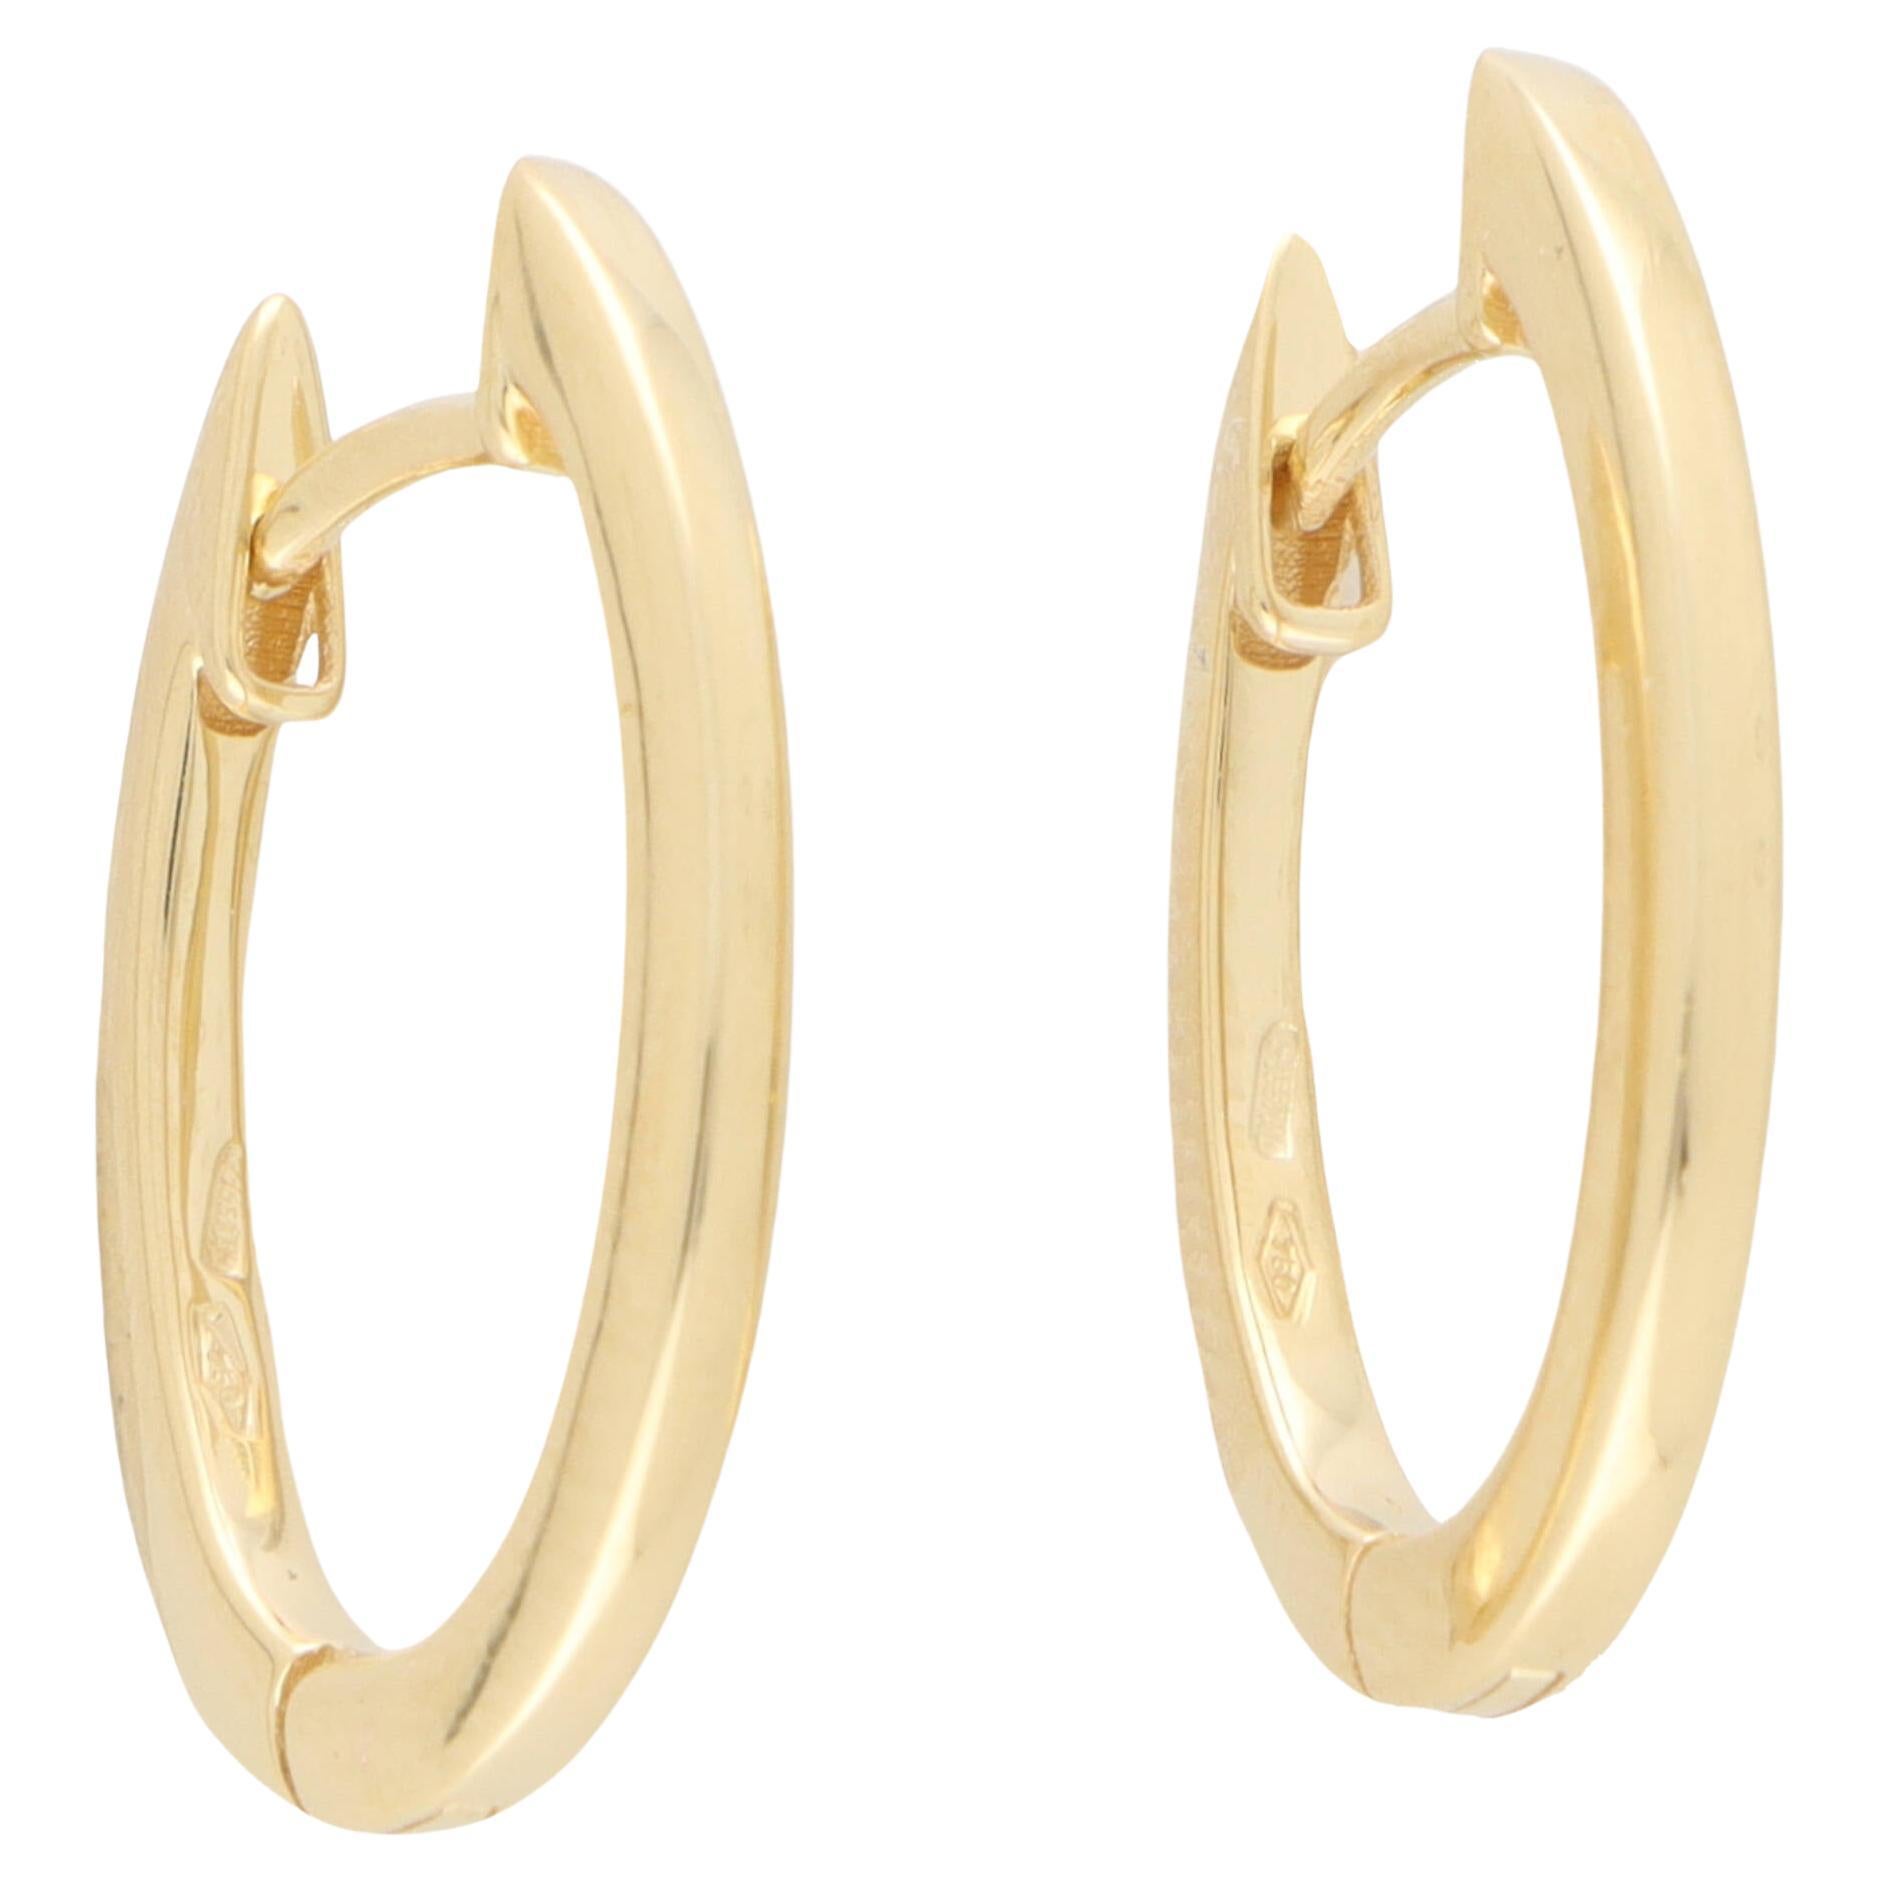 Oval Hoop Earrings in Solid 18k Yellow Gold